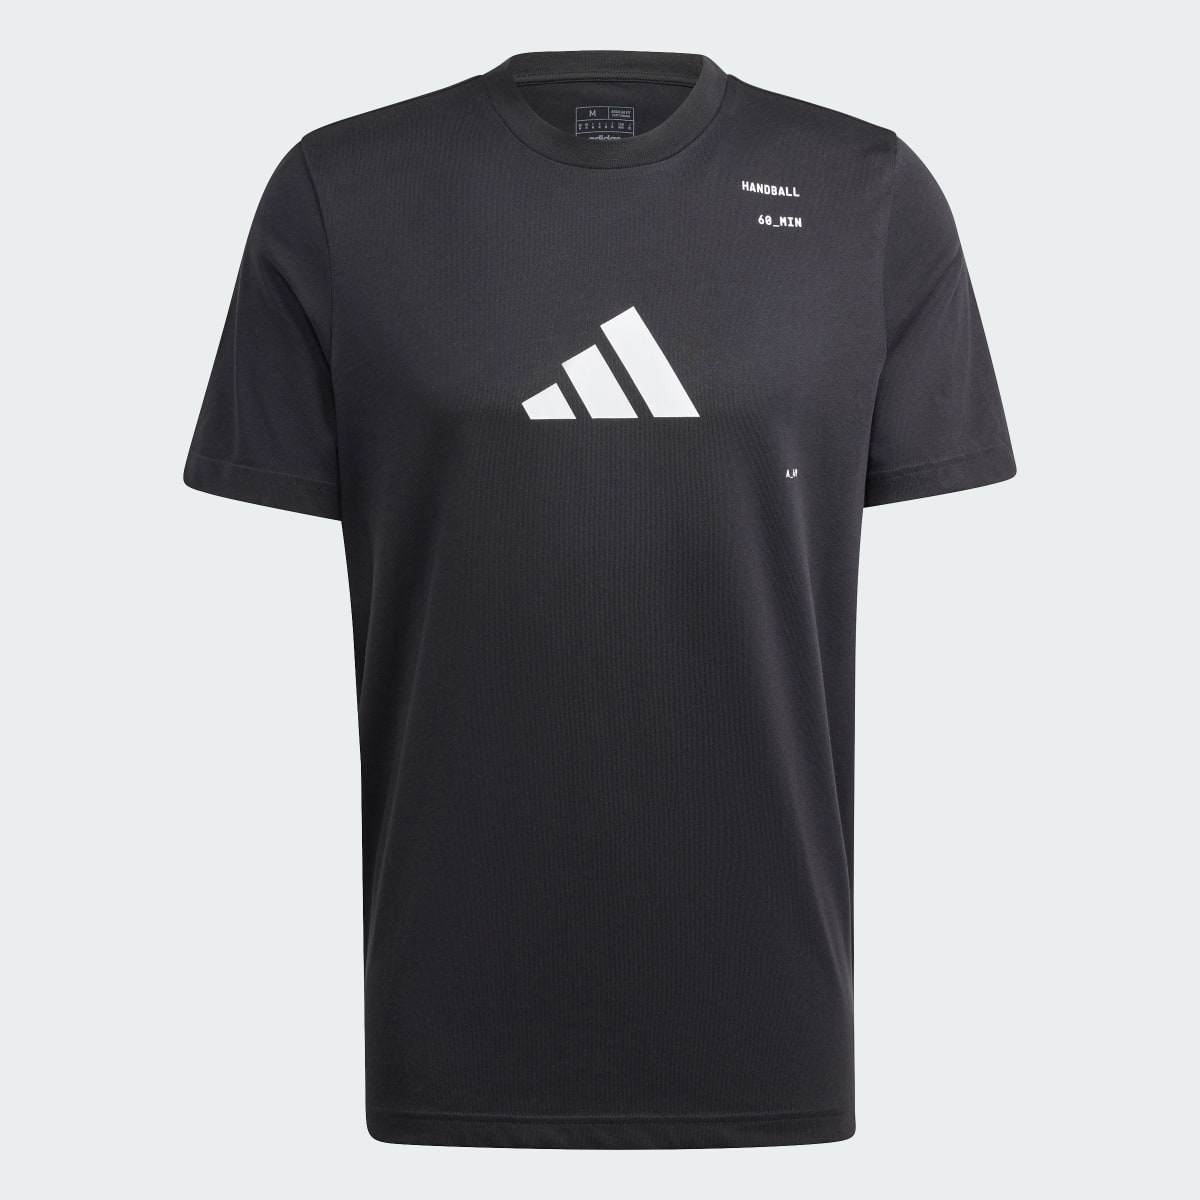 Adidas T-shirt graphique Handball Category. 5